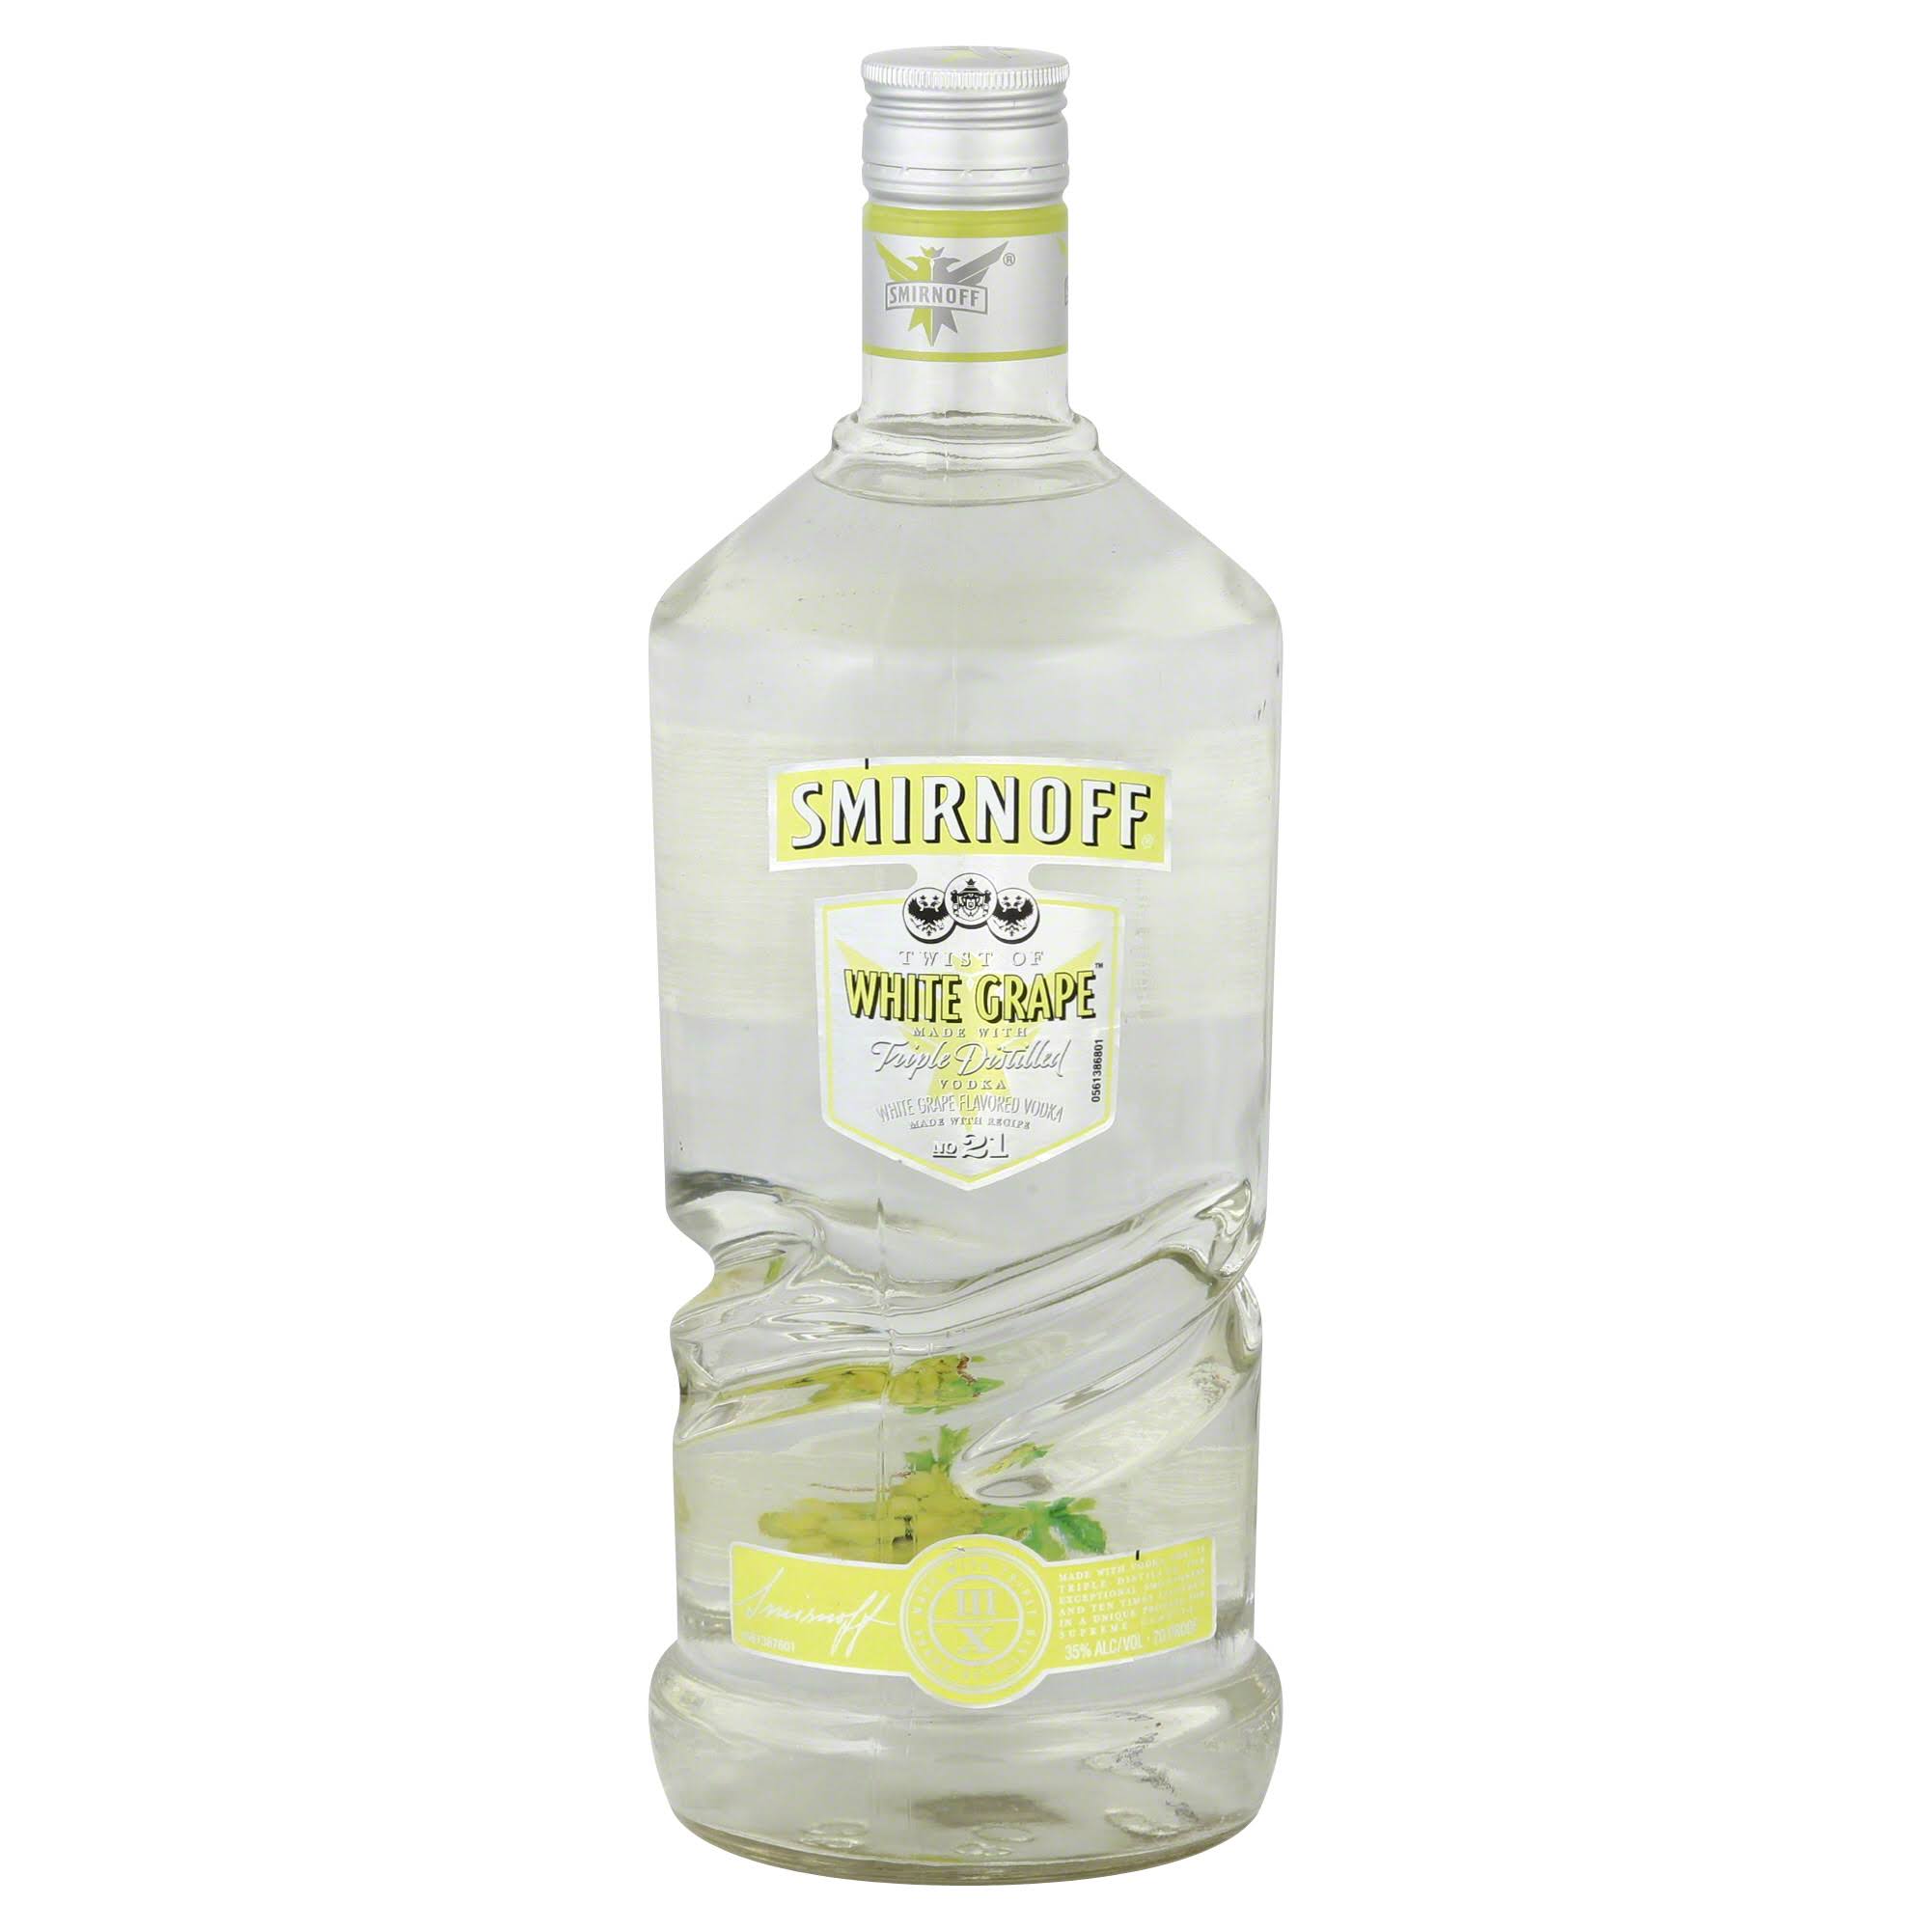 Smirnoff Vodka, Triple Distilled, Twist of White Grape - 1.75 lt